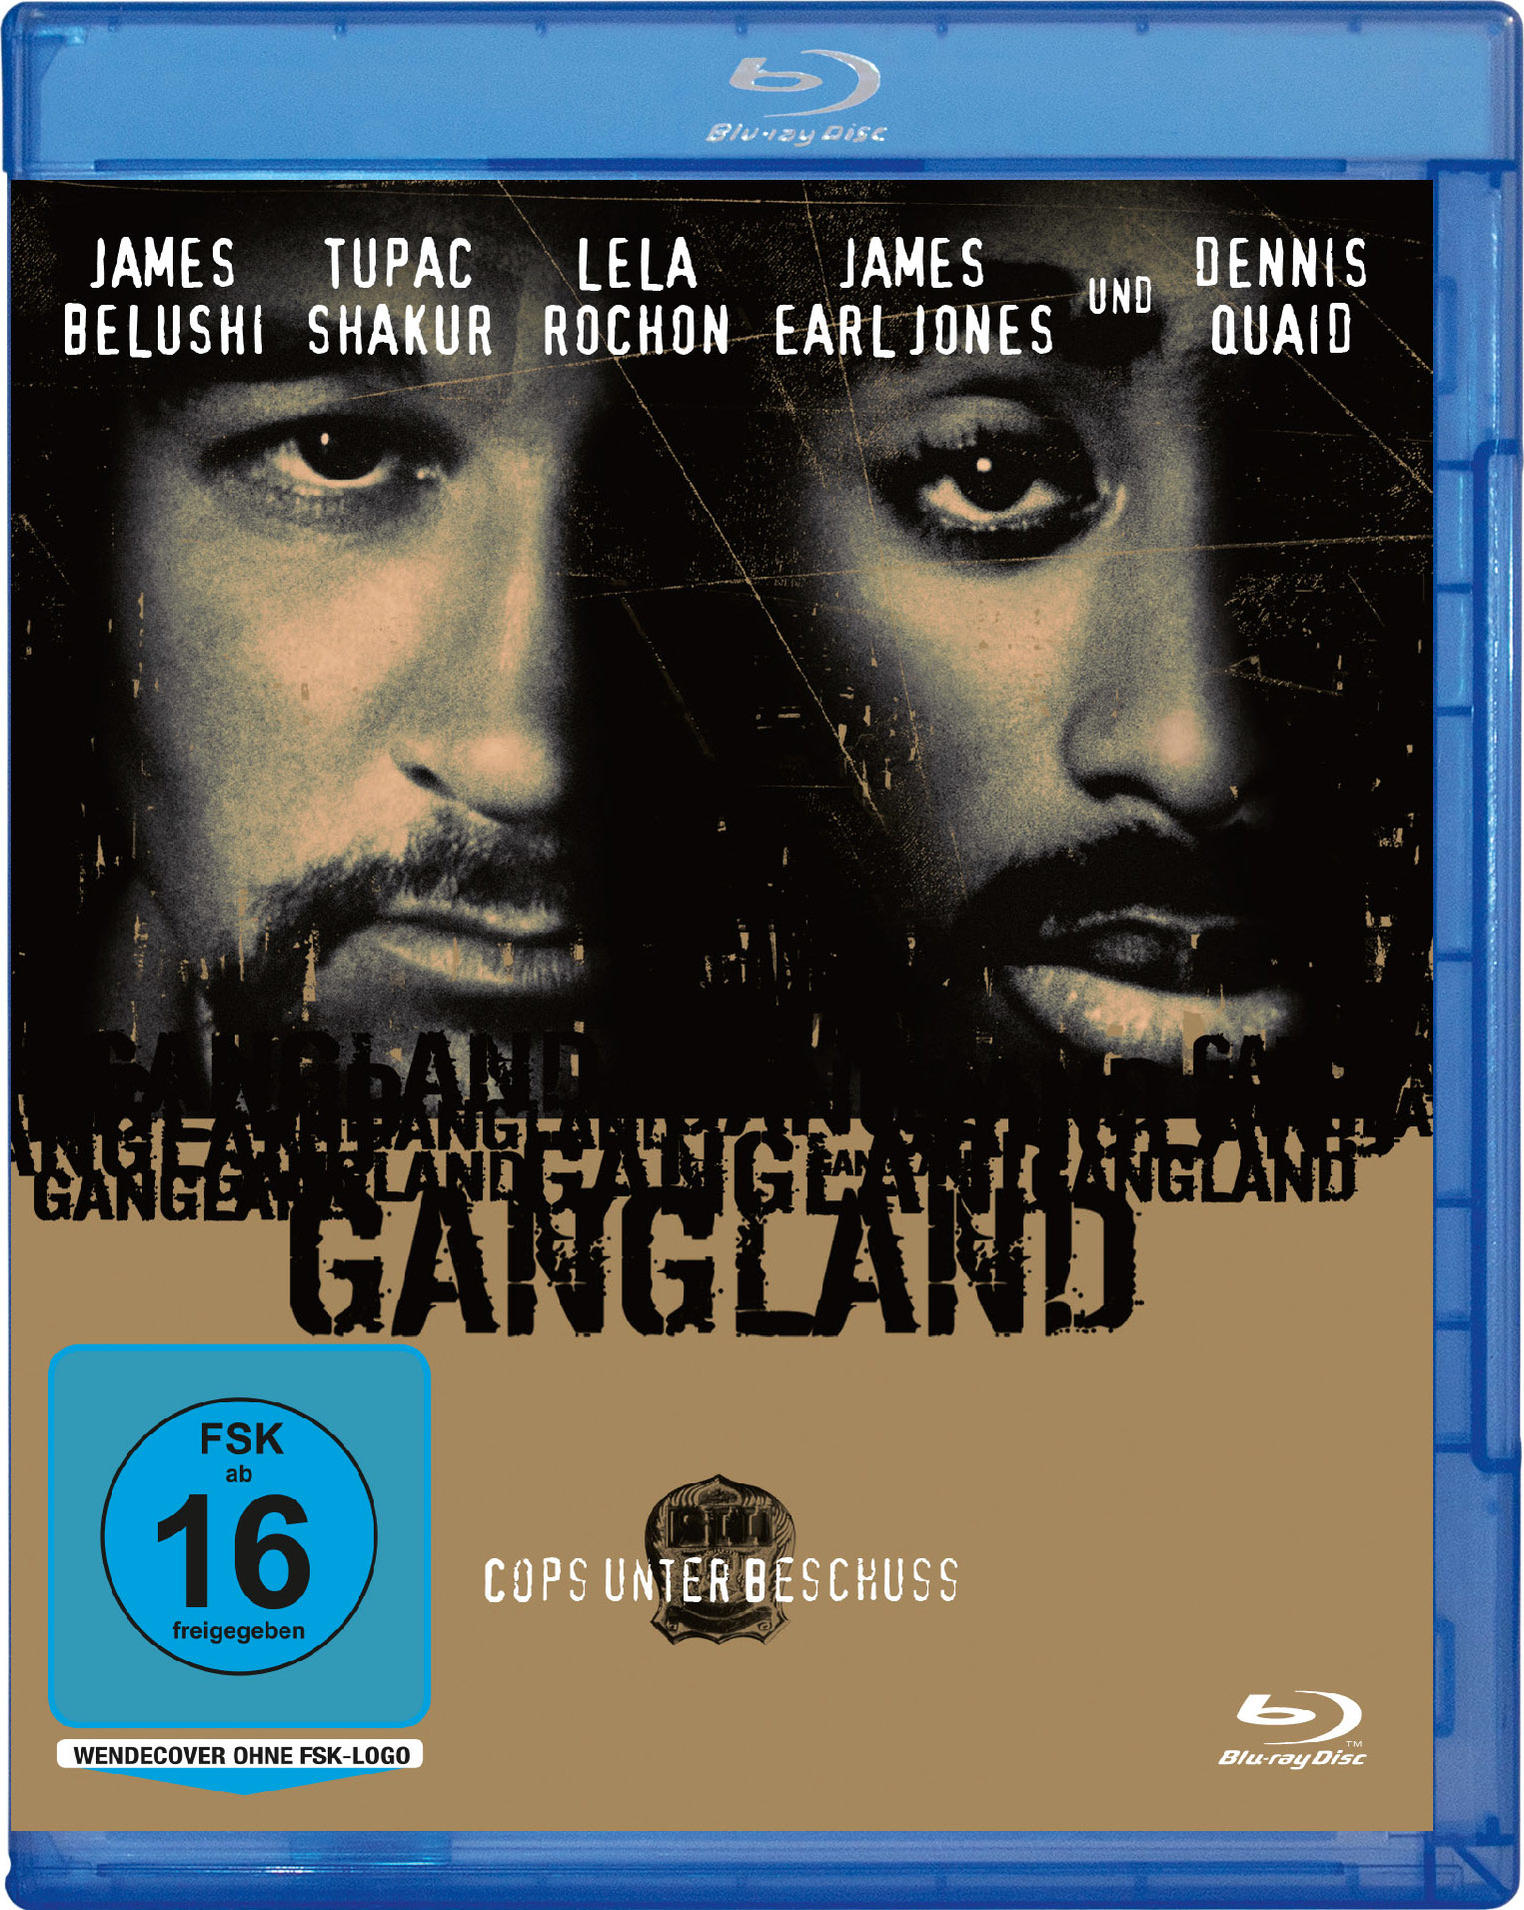 Gangland - Beschuss Blu-ray Cops Unter